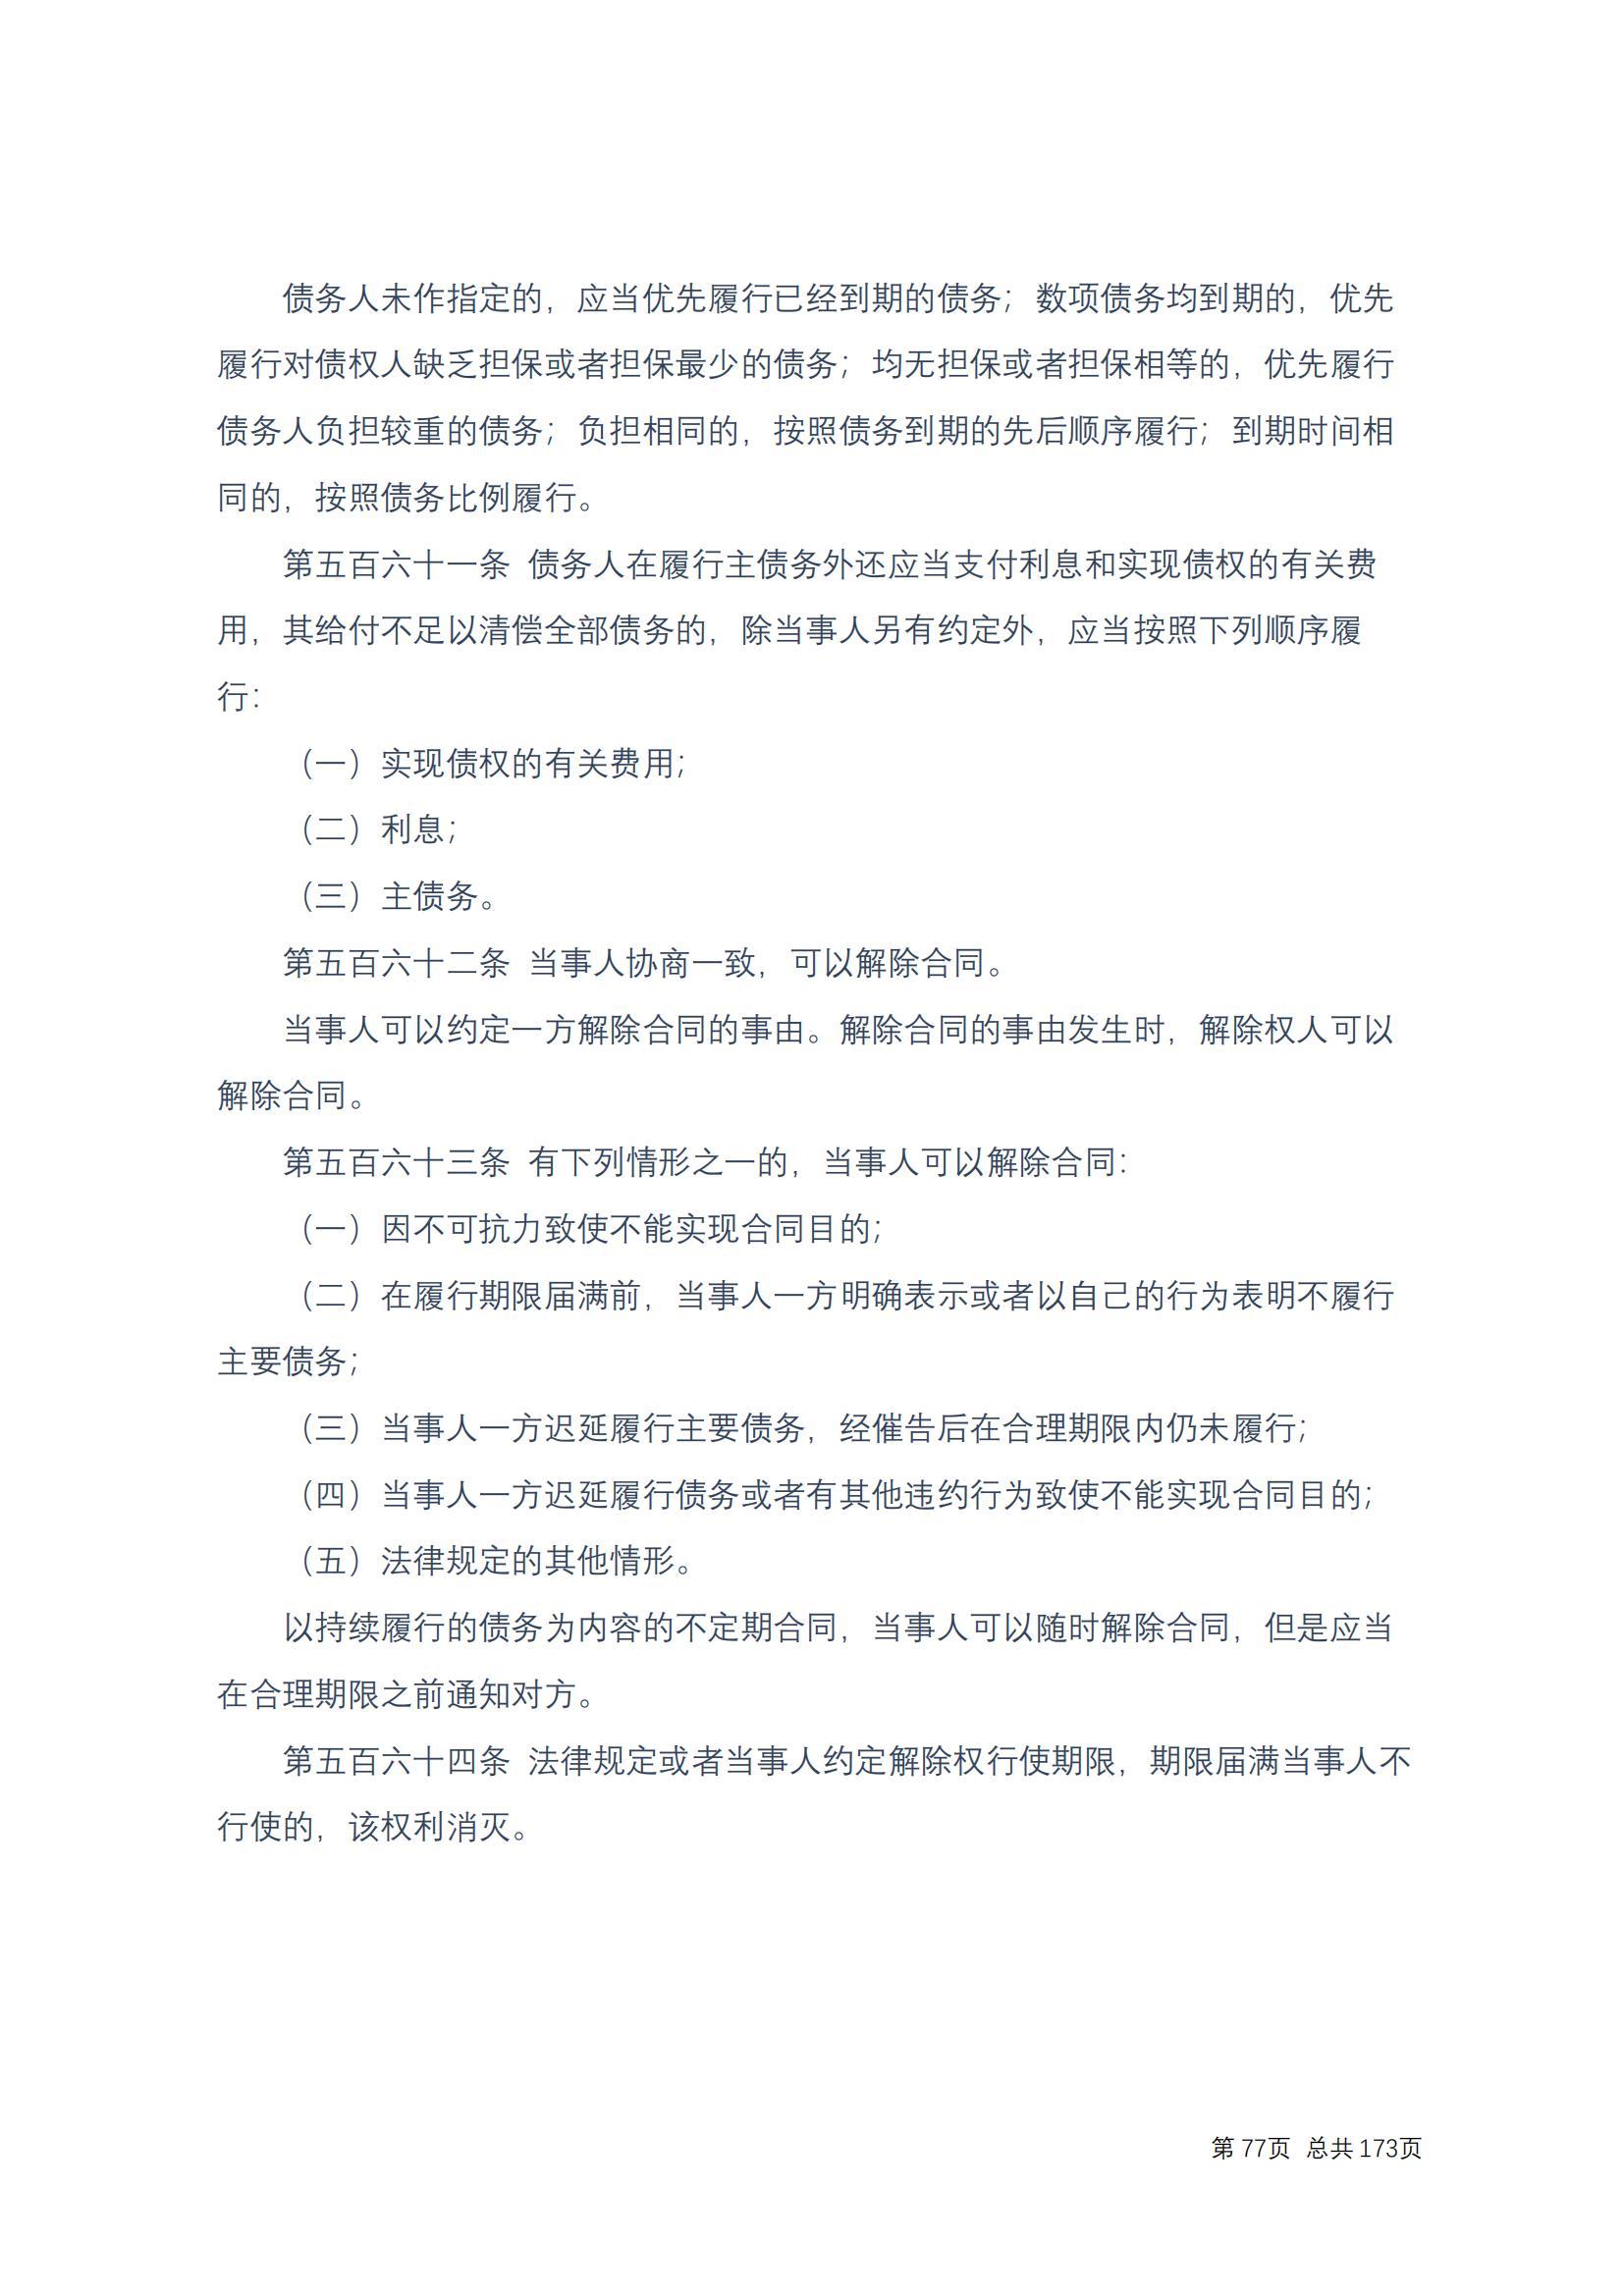 中华人民共和国民法典 修改过_76